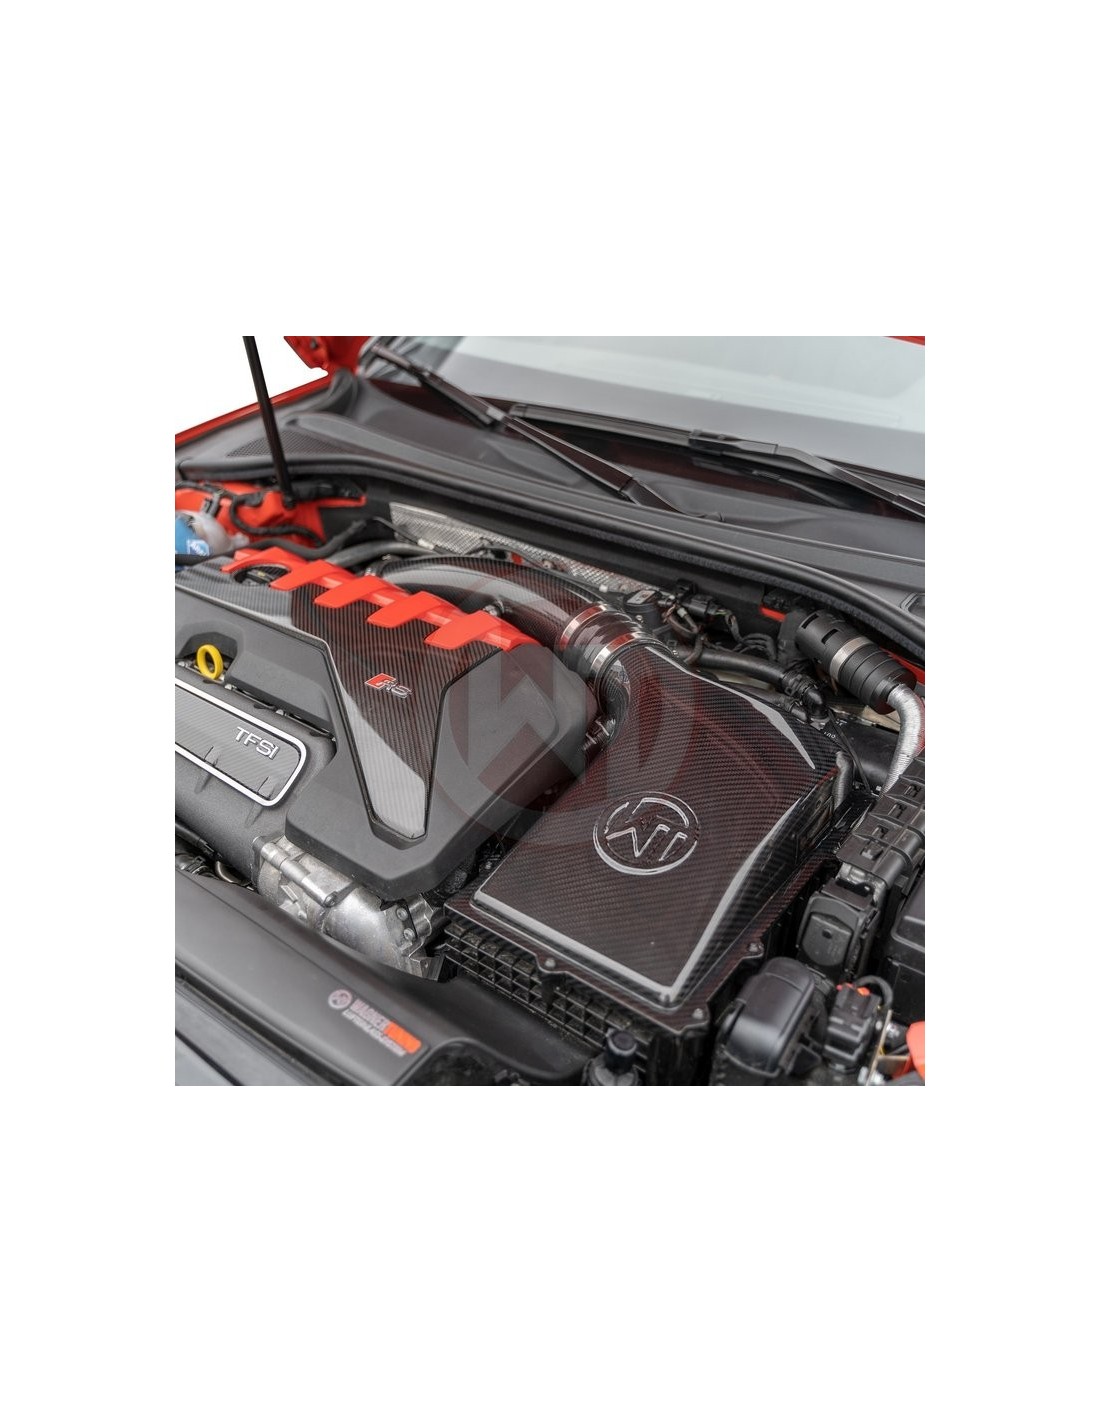 Streetstar Carbon Spiegelkappen - Audi TT FV3, FV9  STW Tuning - Ihr  Onlineshop für KFZ-Tuning & Ersatzteile